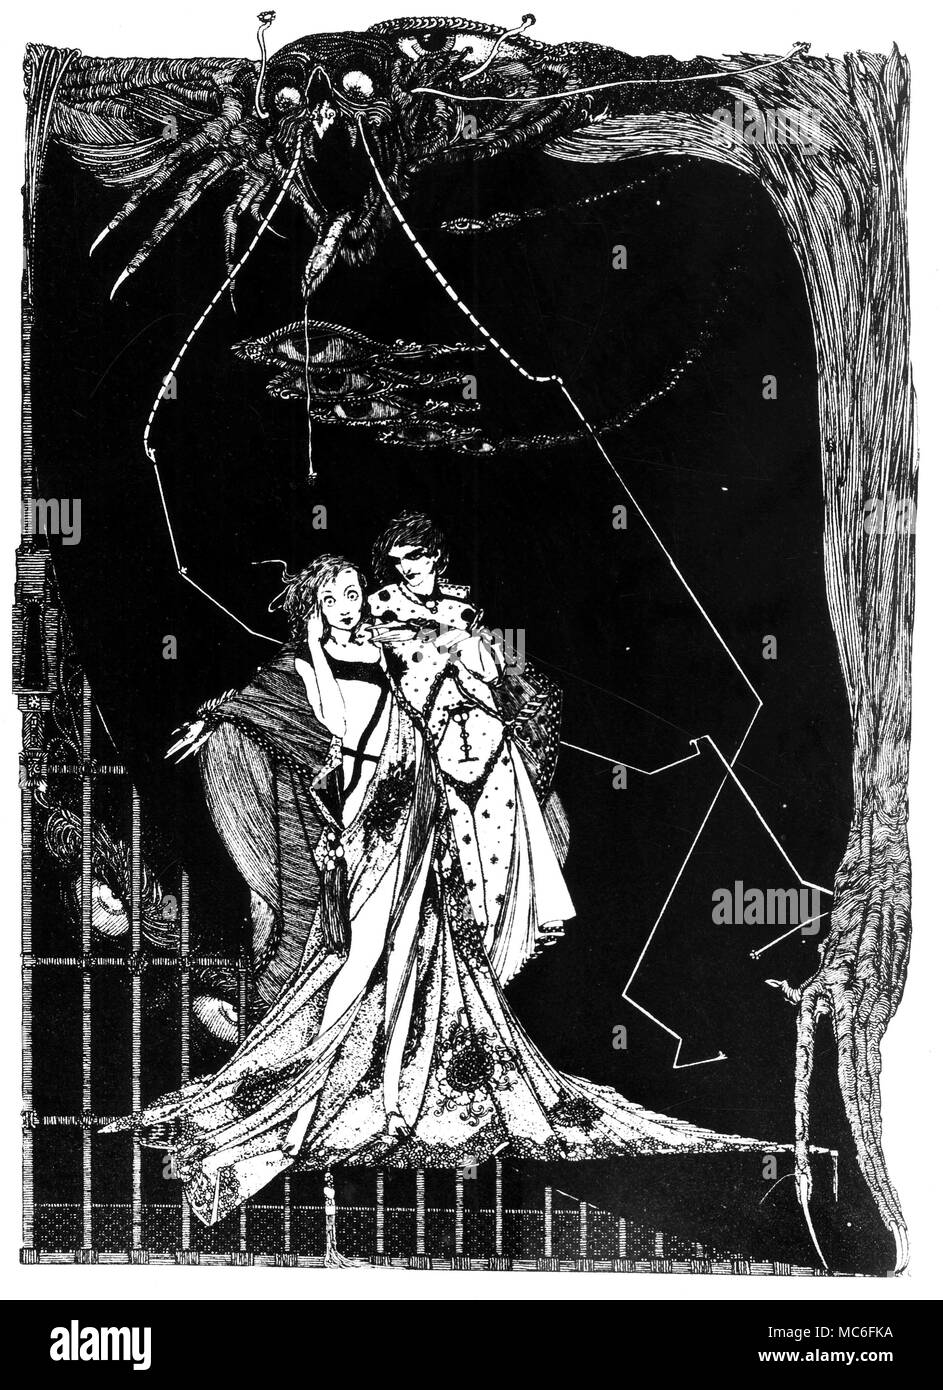 Faust et Gretchen - illustration par Harry Clarke à 'Faust' de Goethe, 1925 Banque D'Images